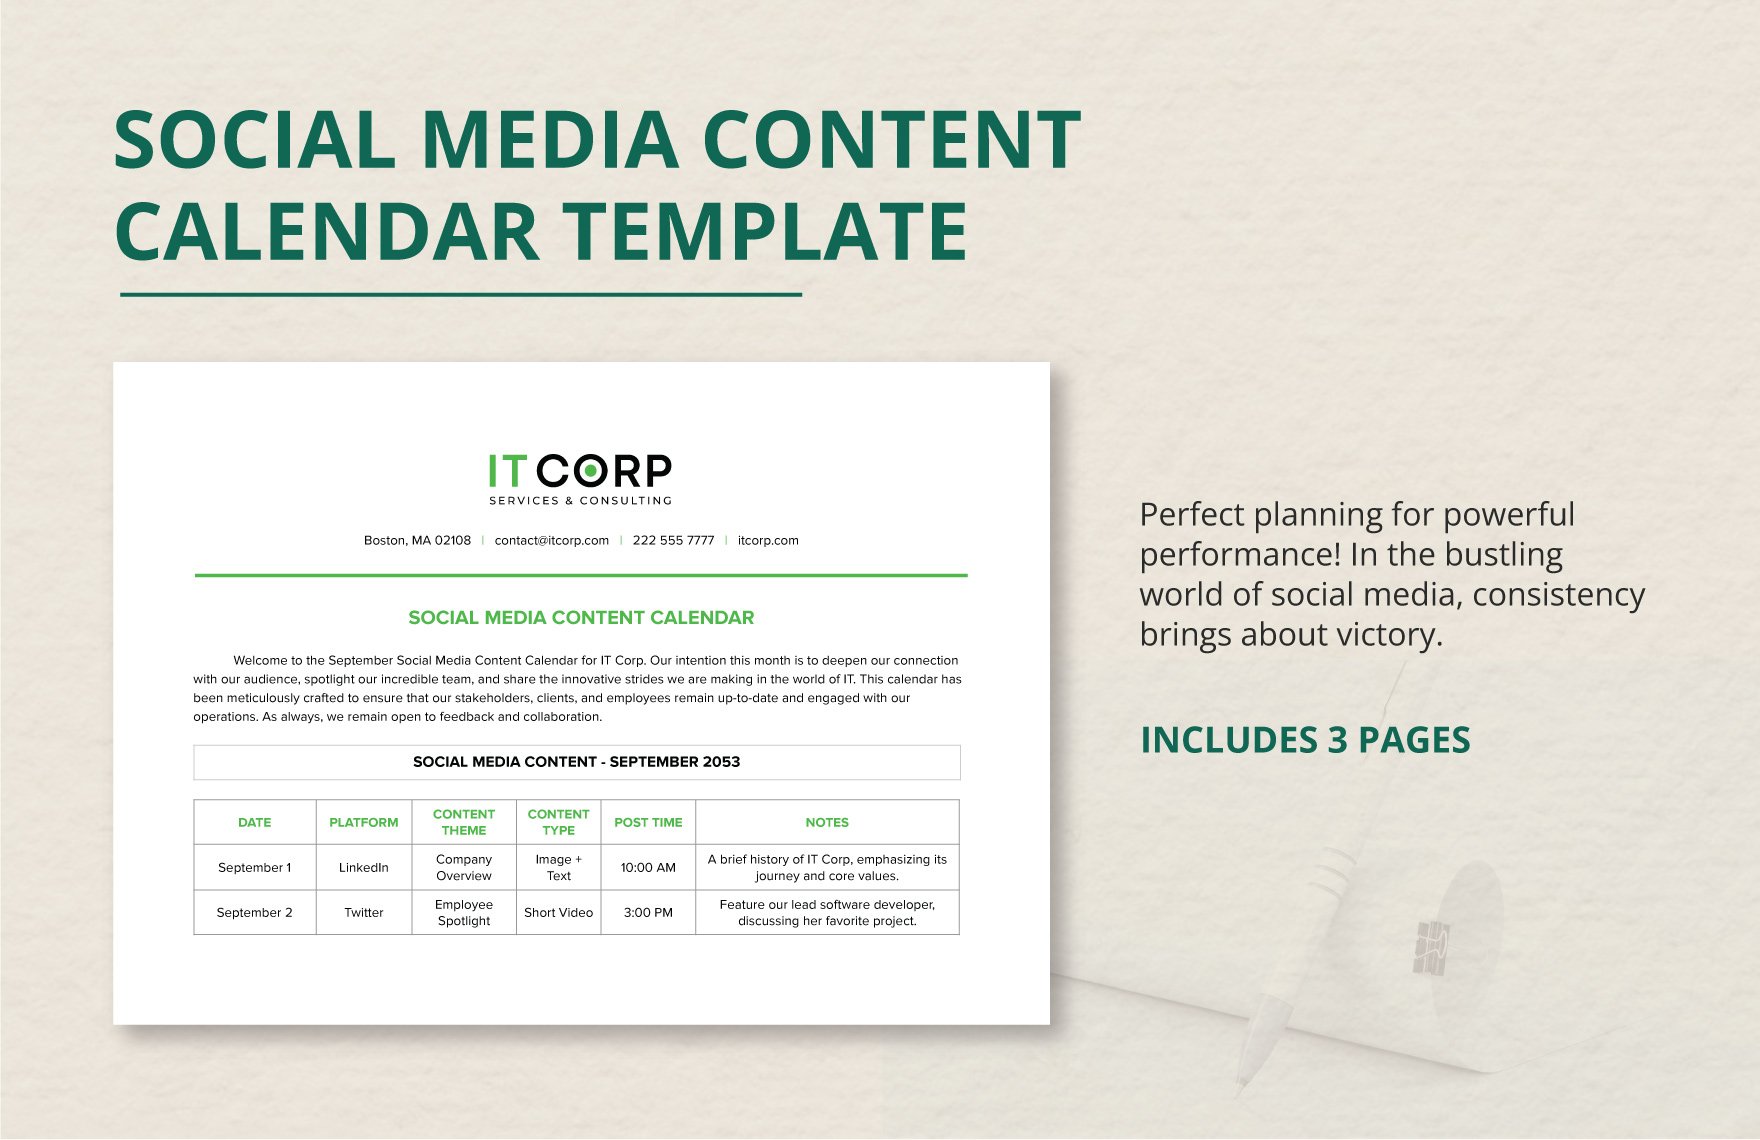 Social Media Content Calendar Template in Word, Google Docs, PDF